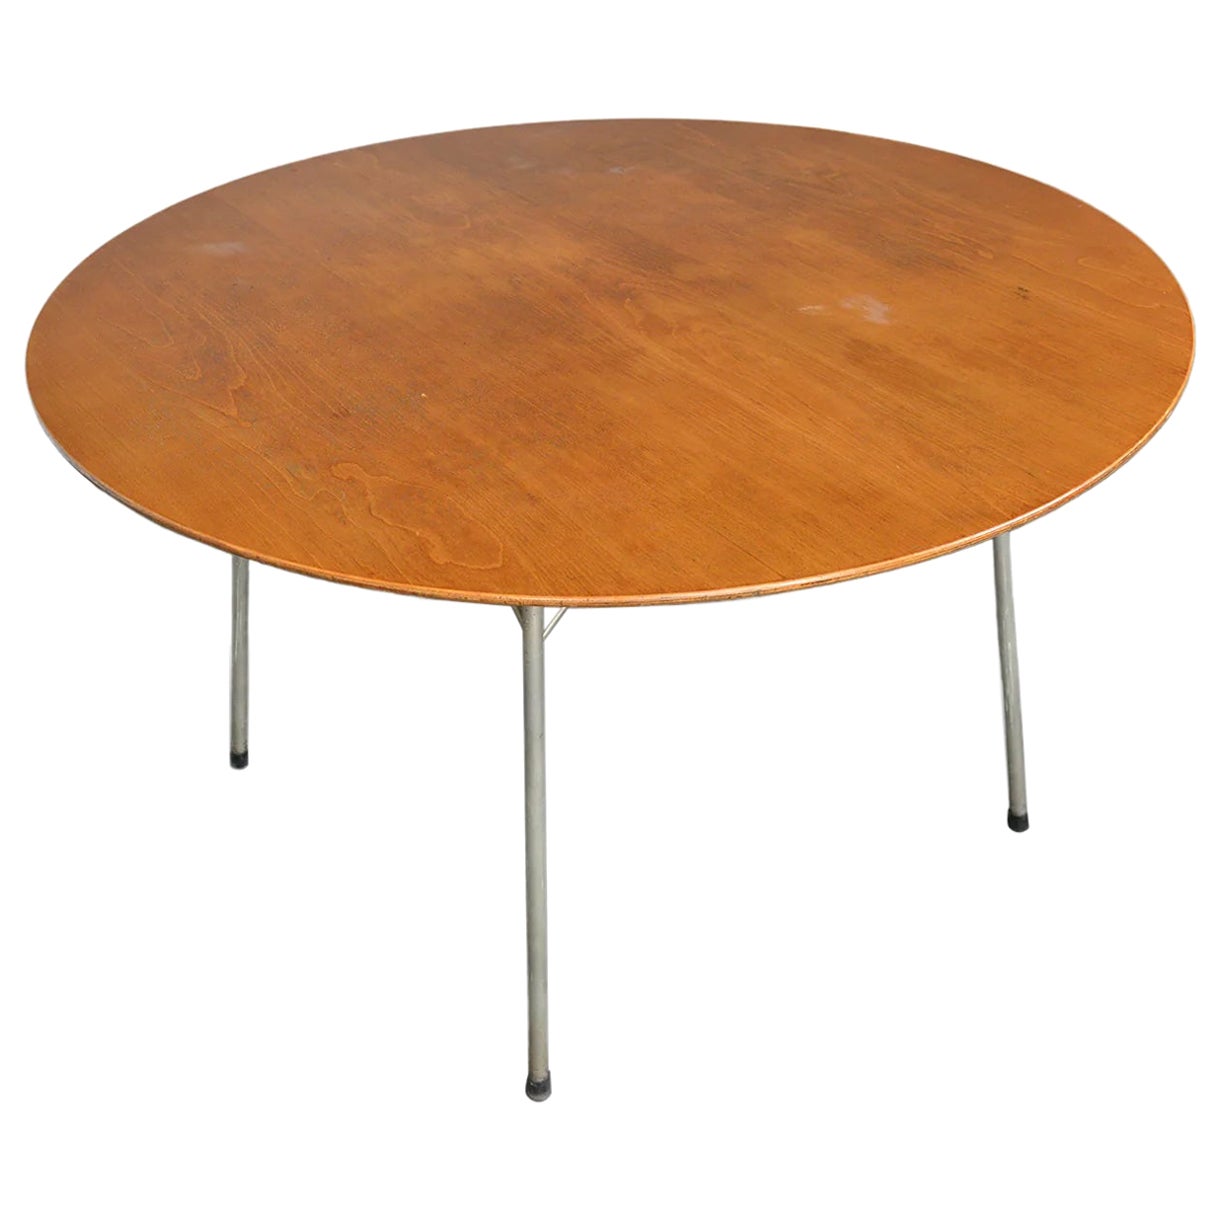 Arne Jacobsen "Ant" Dining Table in Teak